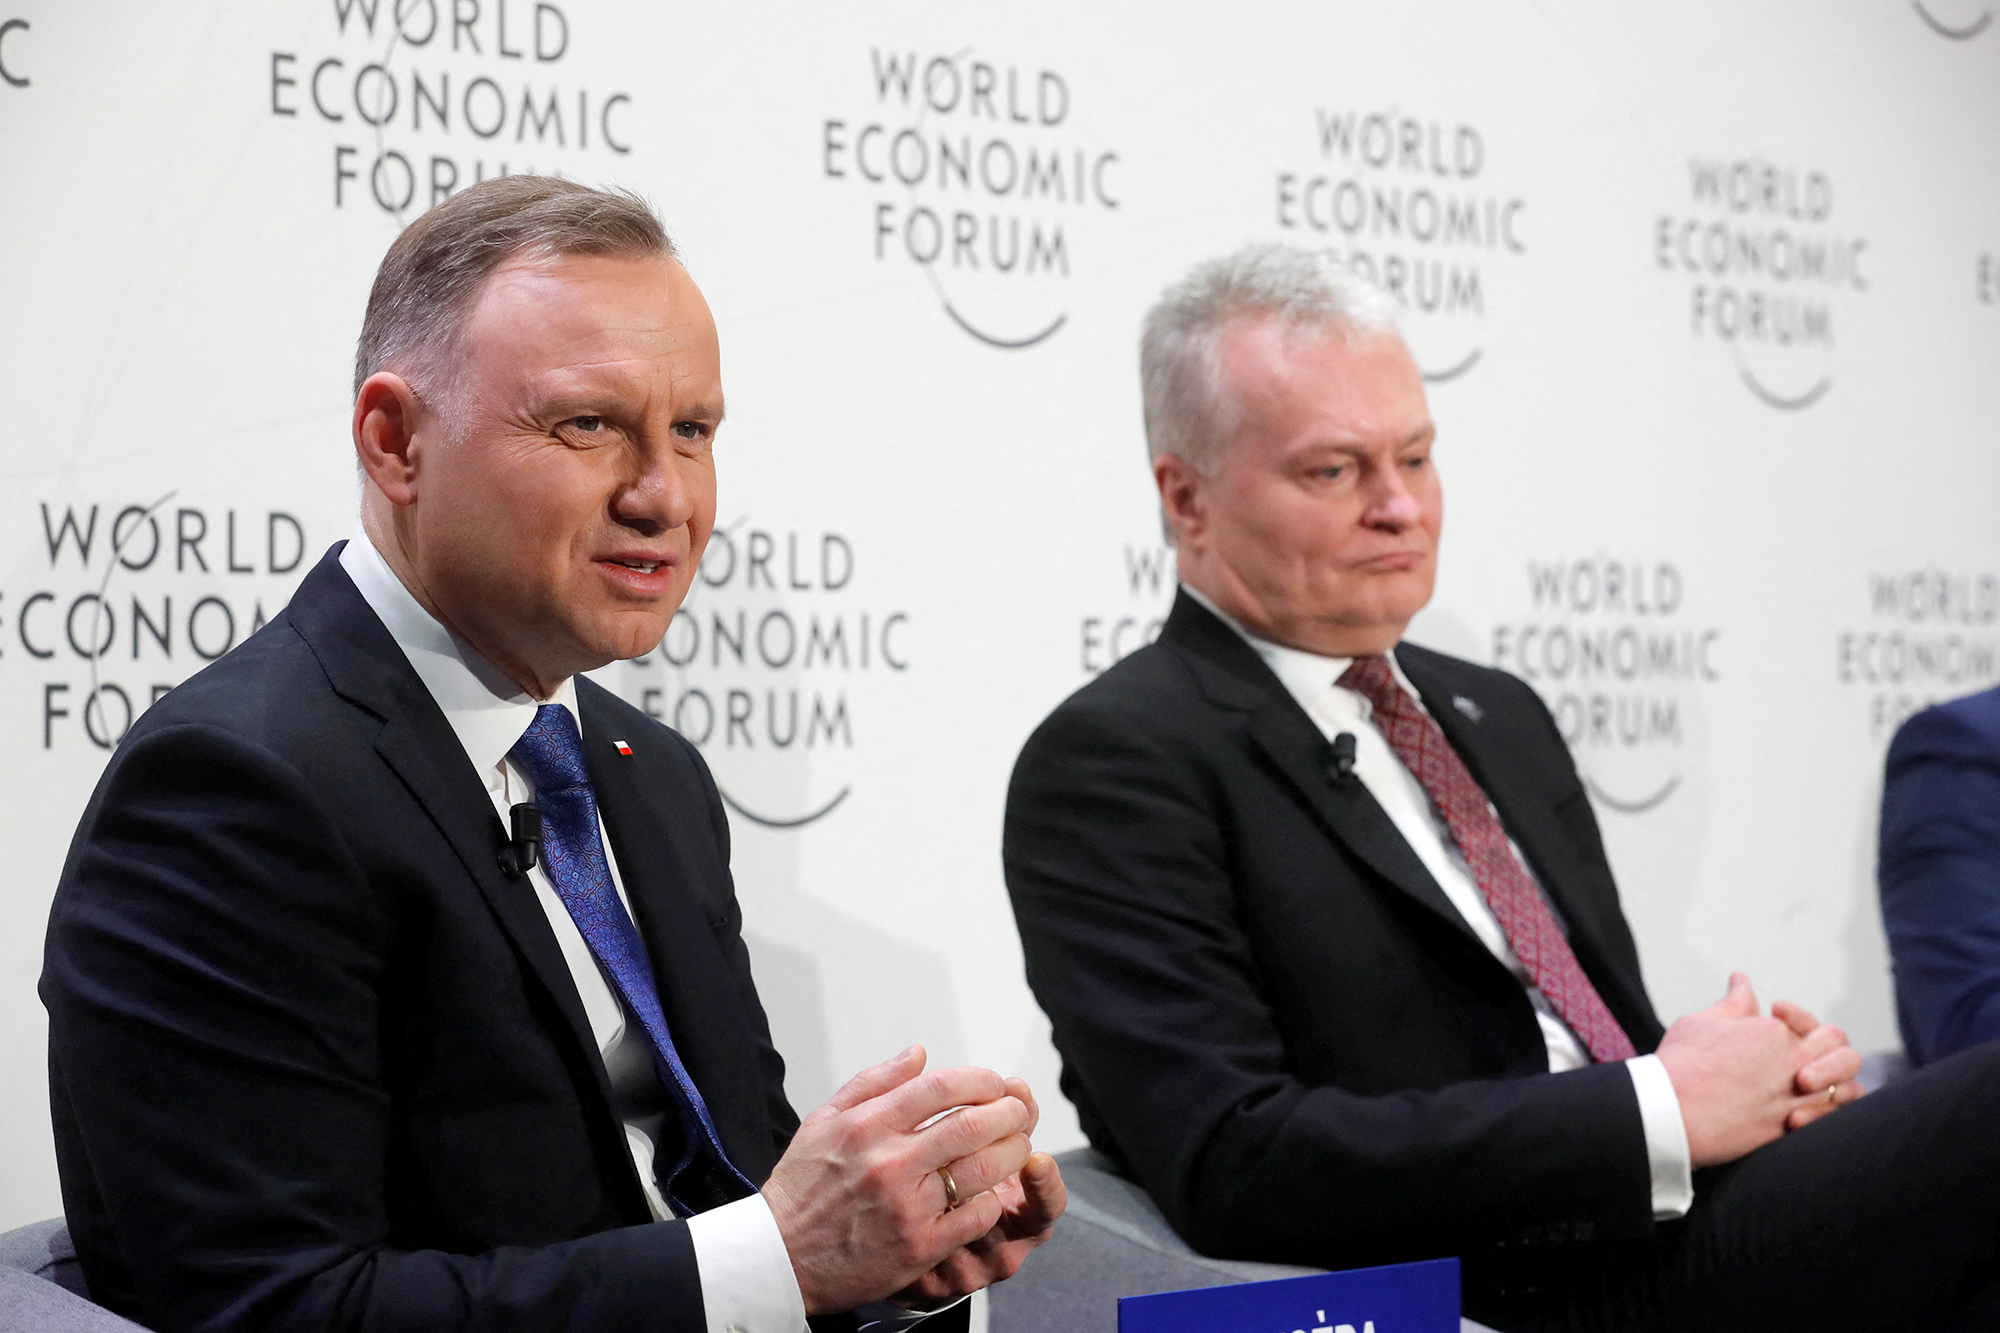 De Poolse president Andrzej Duda.  links, en de Litouwse president Gitanas Nauseda neemt deel aan de sessie van het World Economic Forum (WEF). "Ter verdediging van Europa"in Davos, Zwitserland, op 17 januari.